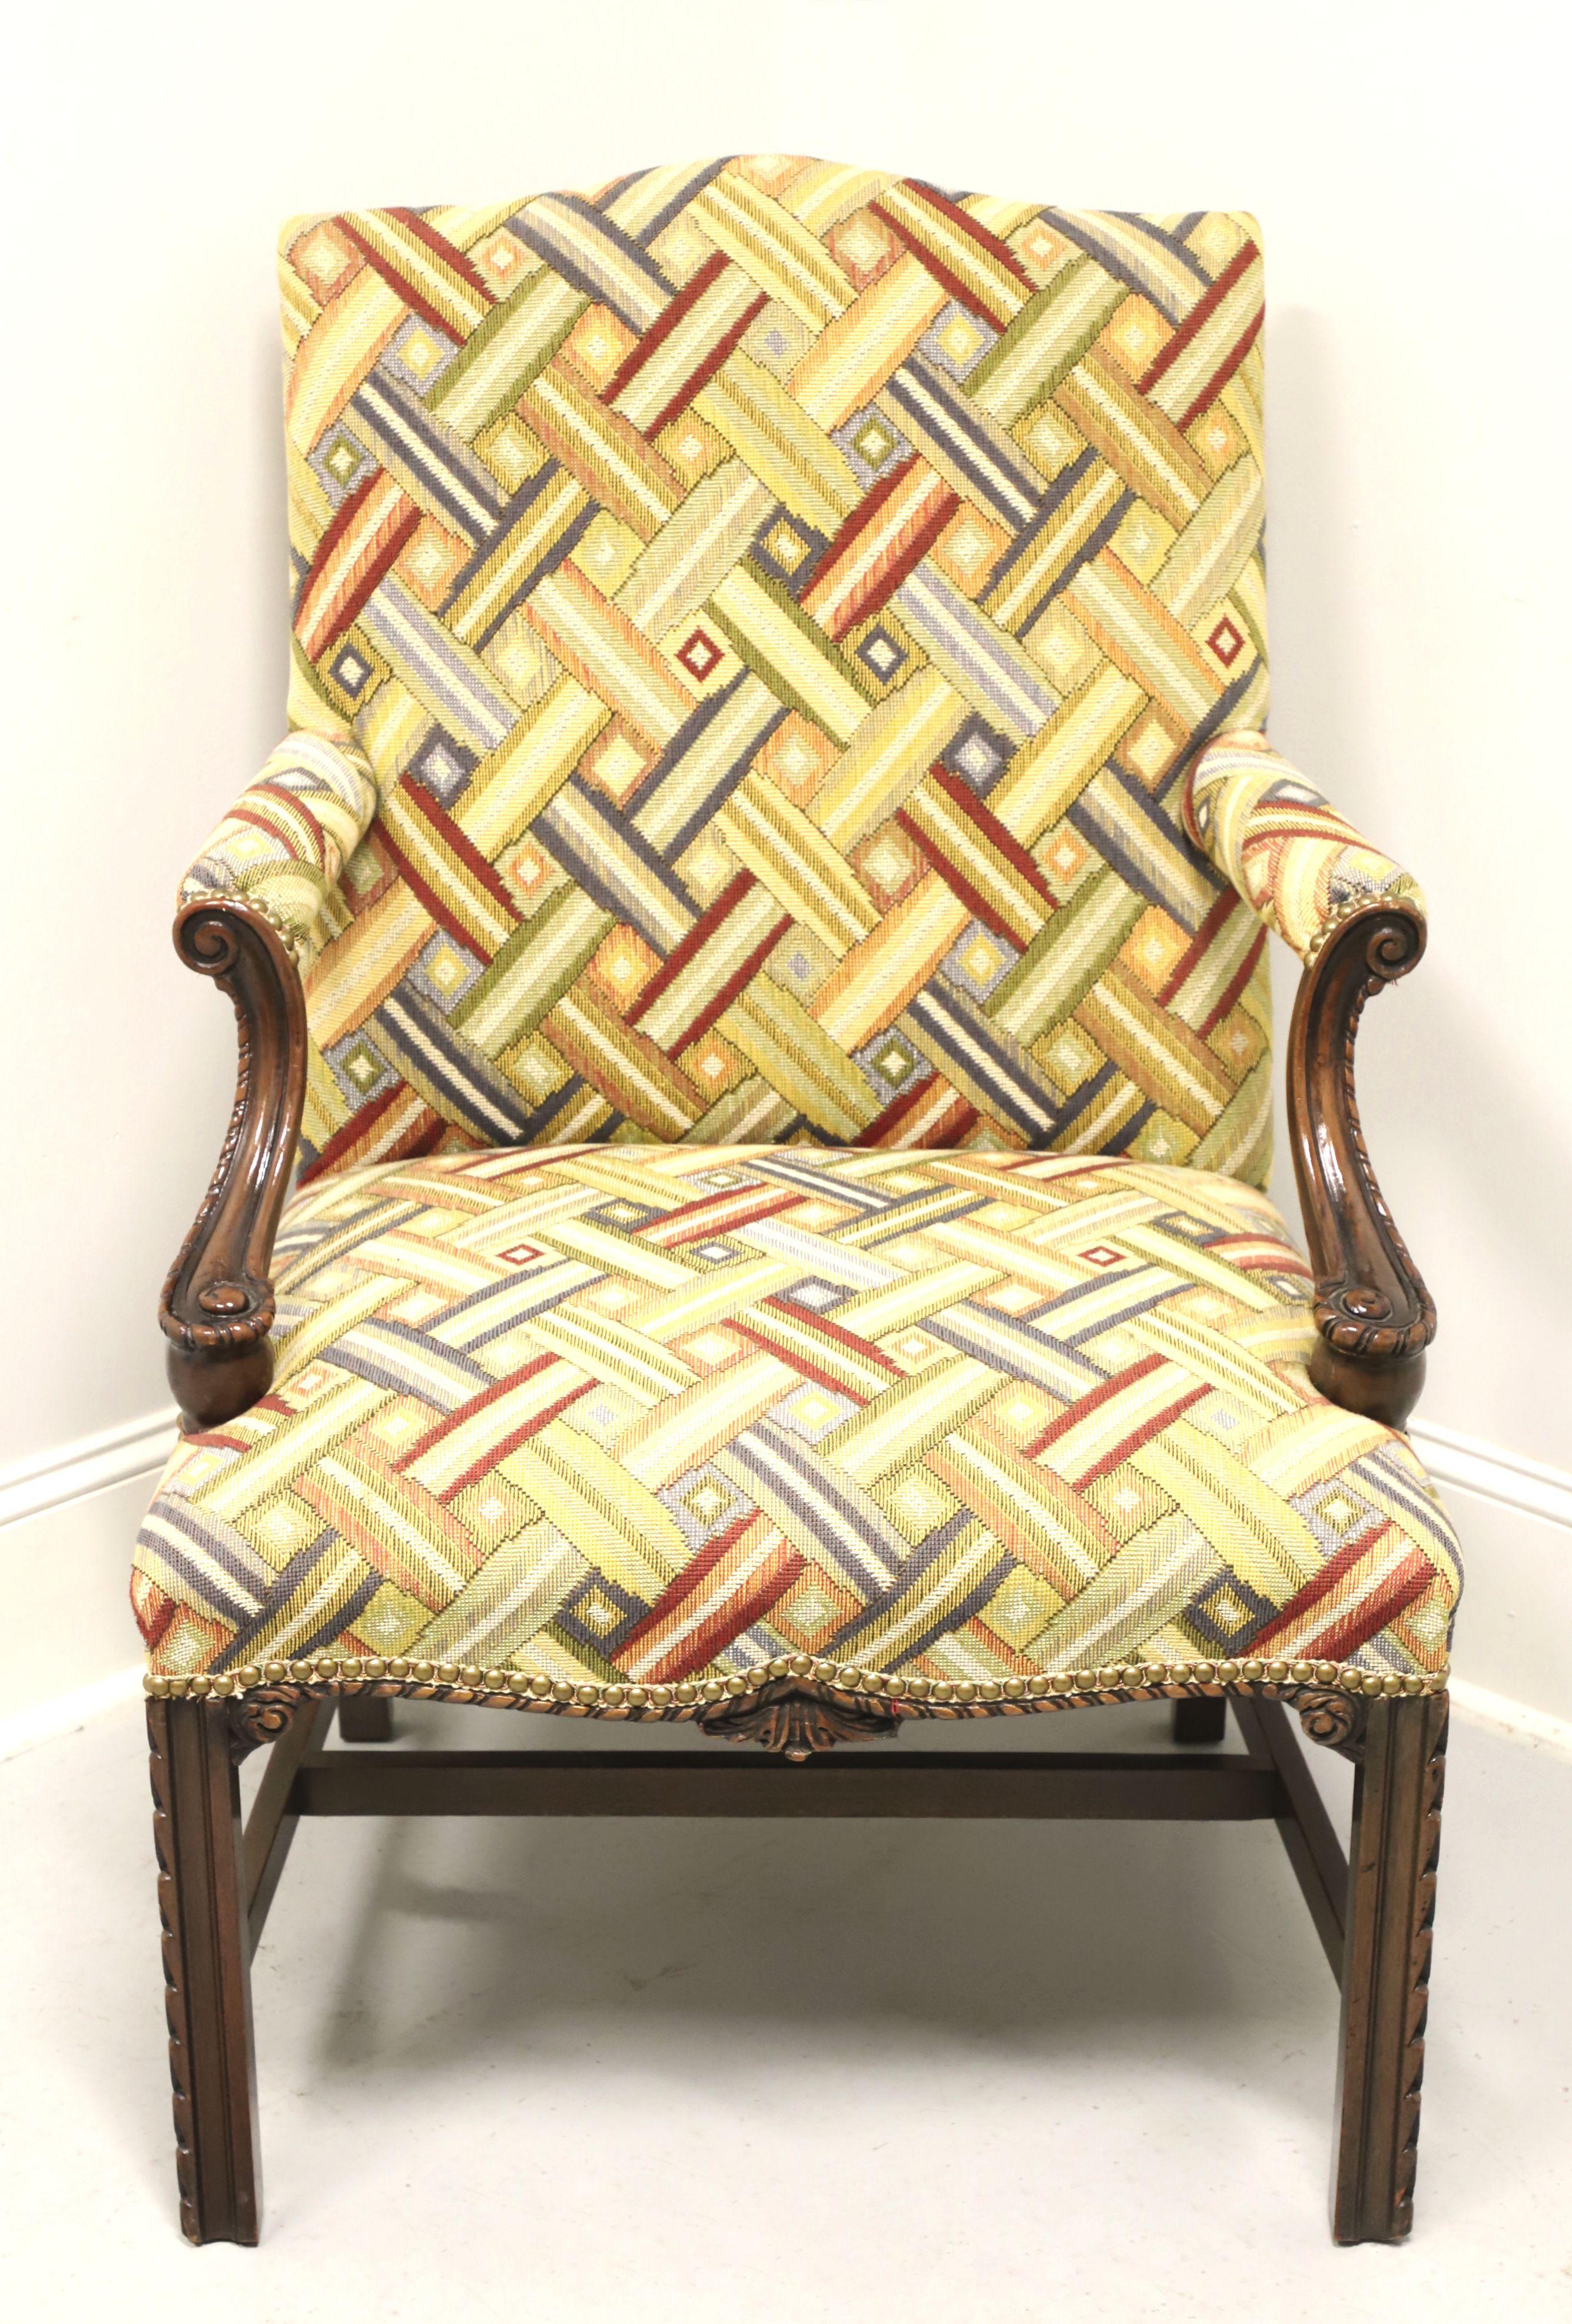 Ein gepolsterter Chippendale-Sessel im Martha-Washington-Stil, ohne Marke, ähnliche Qualität wie Drexel oder Hickory Chair. Gestell aus Mahagoni, Polsterung aus mehrfarbigem, verwobenem Stoff, hohe Rückenlehne, gepolsterte Armlehnen mit geschnitzten